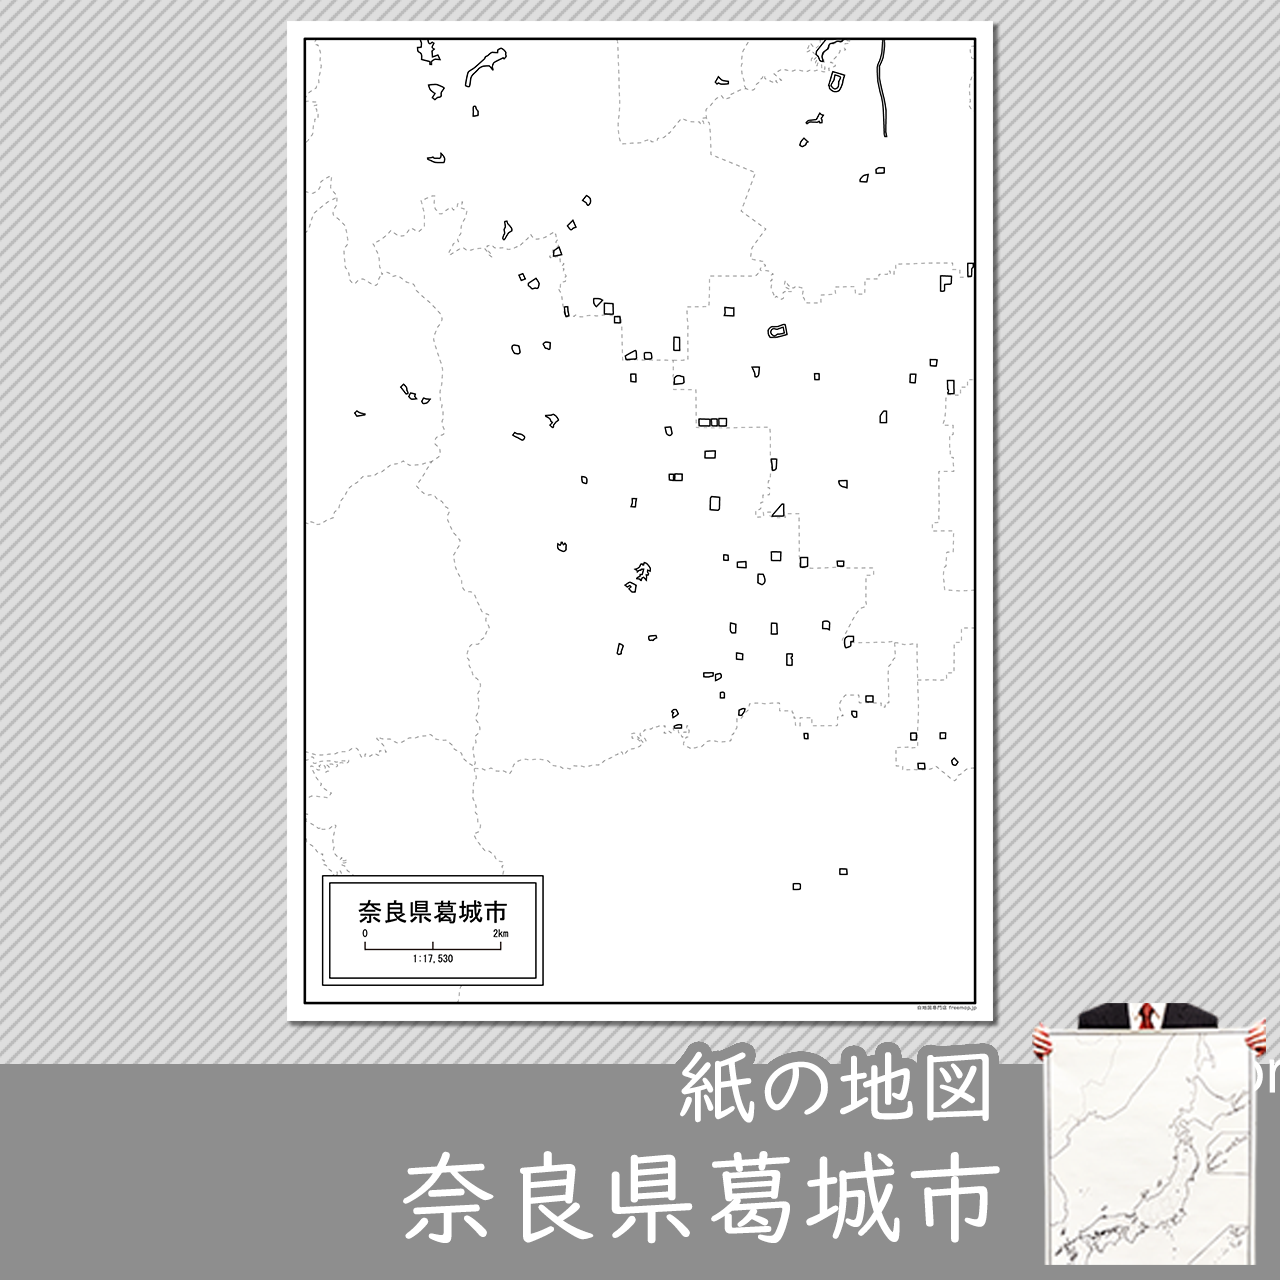 葛城市の紙の白地図のサムネイル